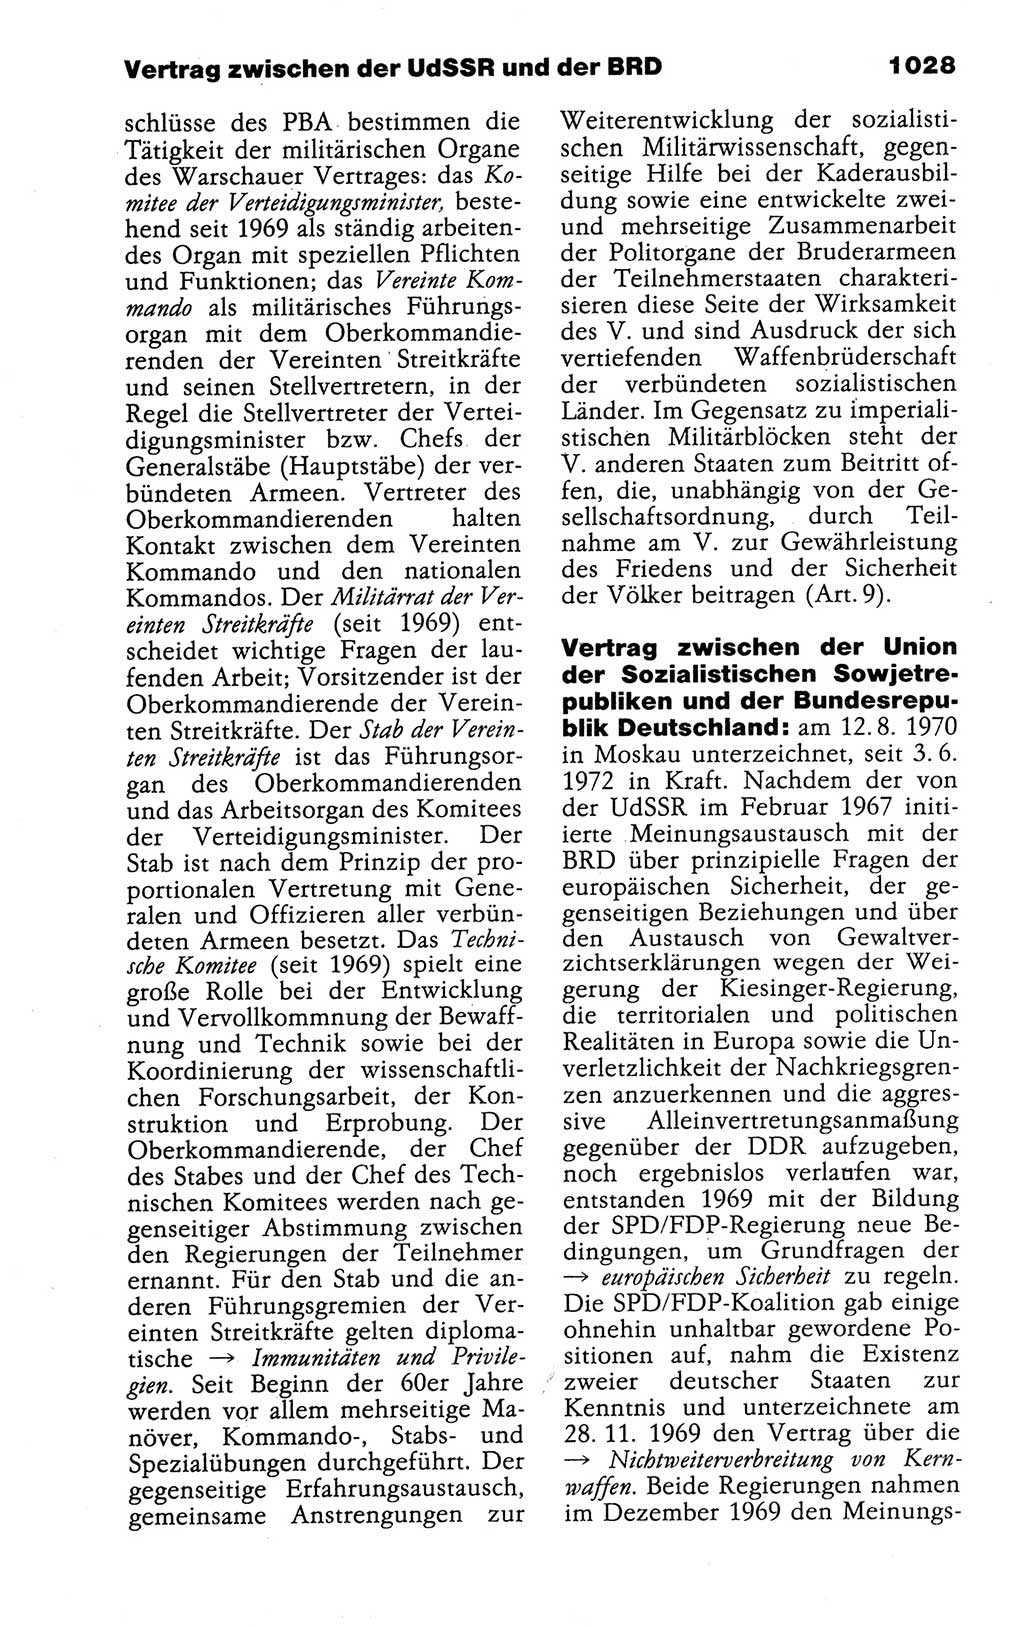 Kleines politisches Wörterbuch [Deutsche Demokratische Republik (DDR)] 1988, Seite 1028 (Kl. pol. Wb. DDR 1988, S. 1028)